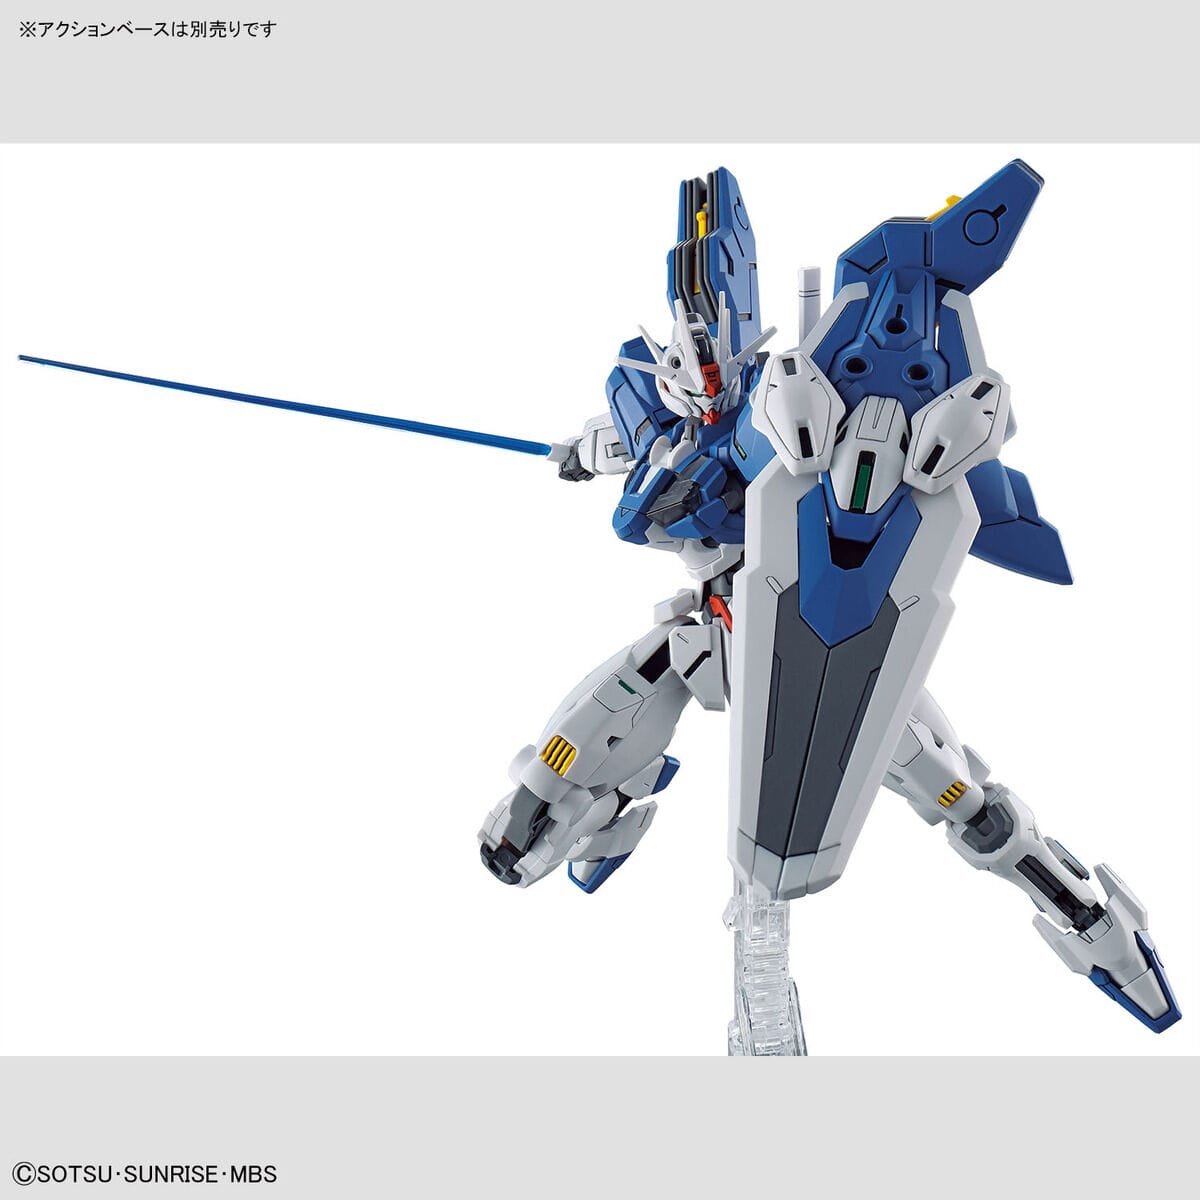 HG 1/144 Gundam Aerial Rebuild - Bandai - Glacier Hobbies